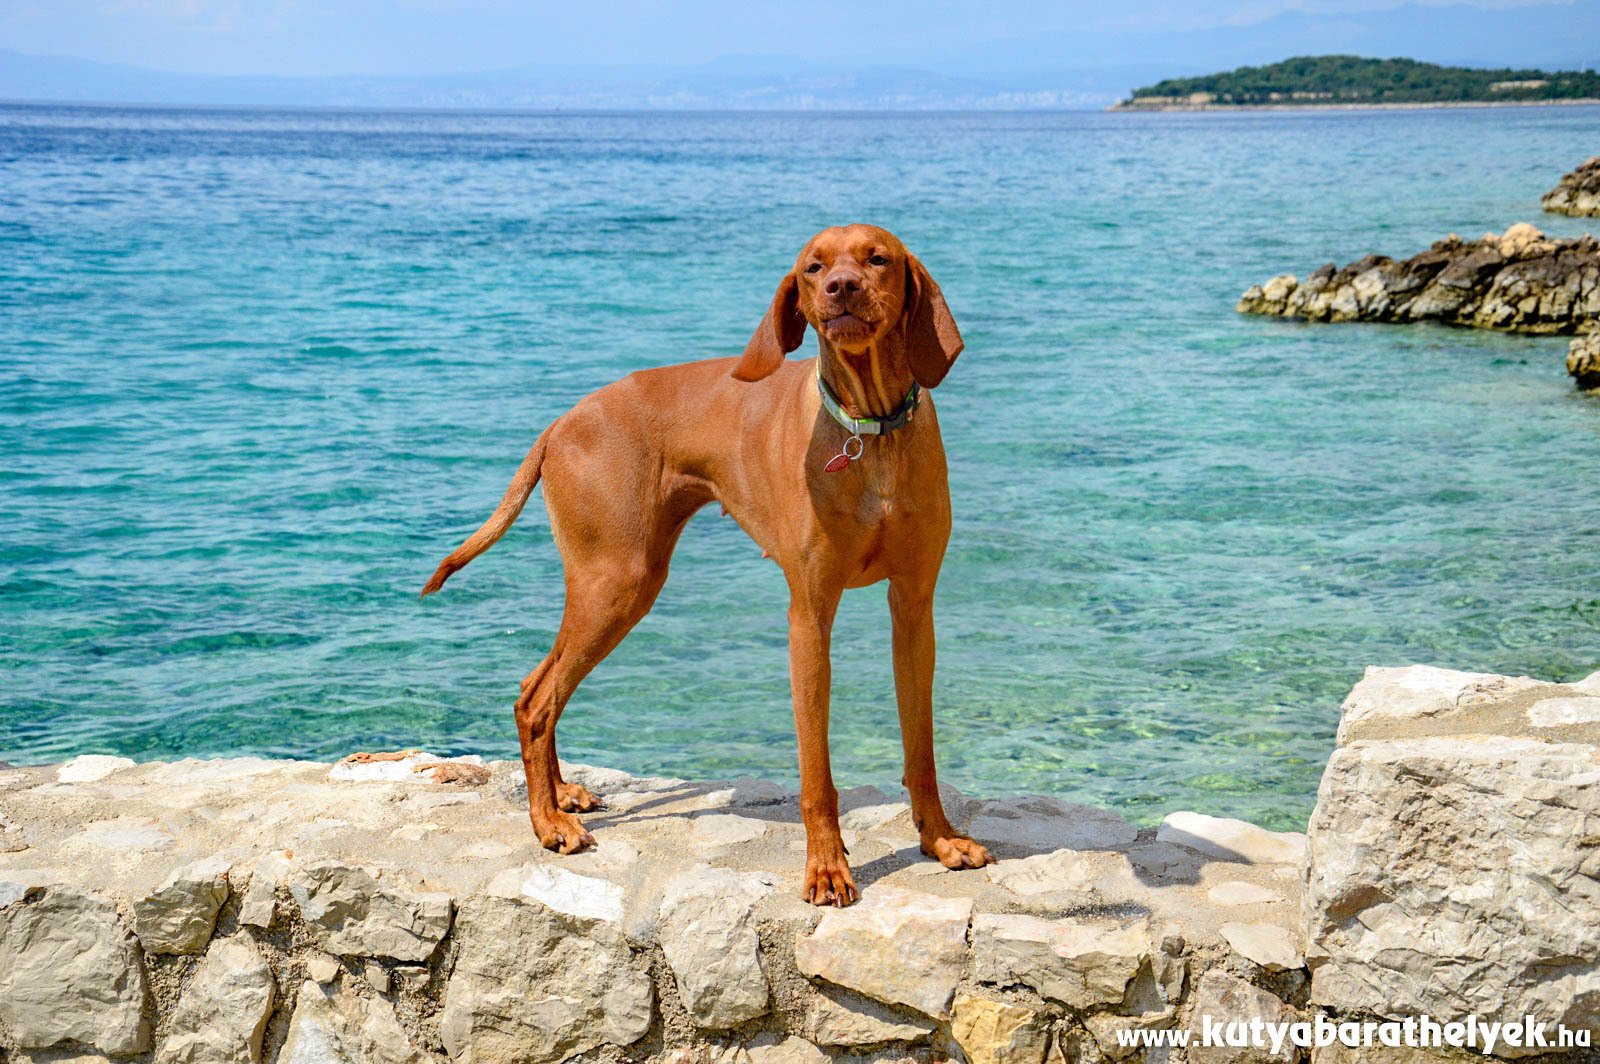 Horvátországban szívesen látják a kutyával érkező turistákat is